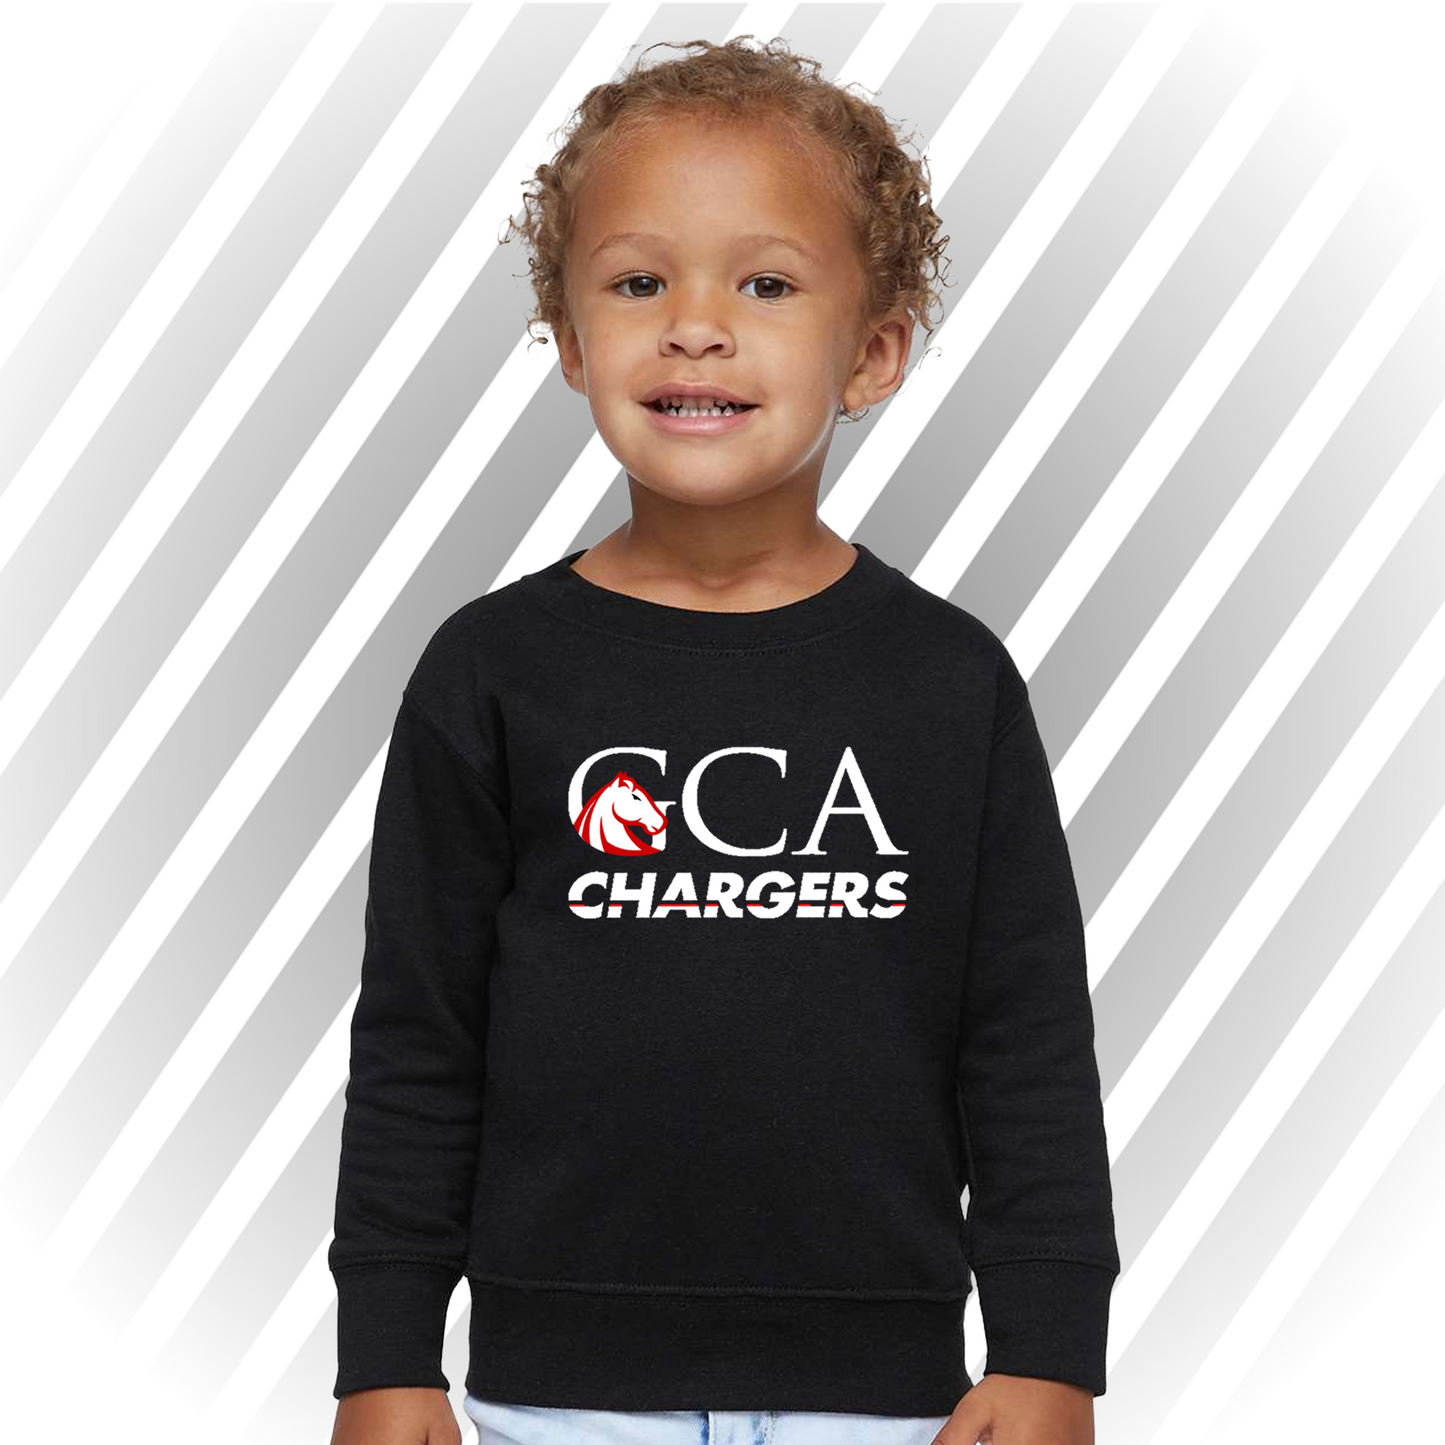 GCA Chargers - Toddler Crewneck Sweater